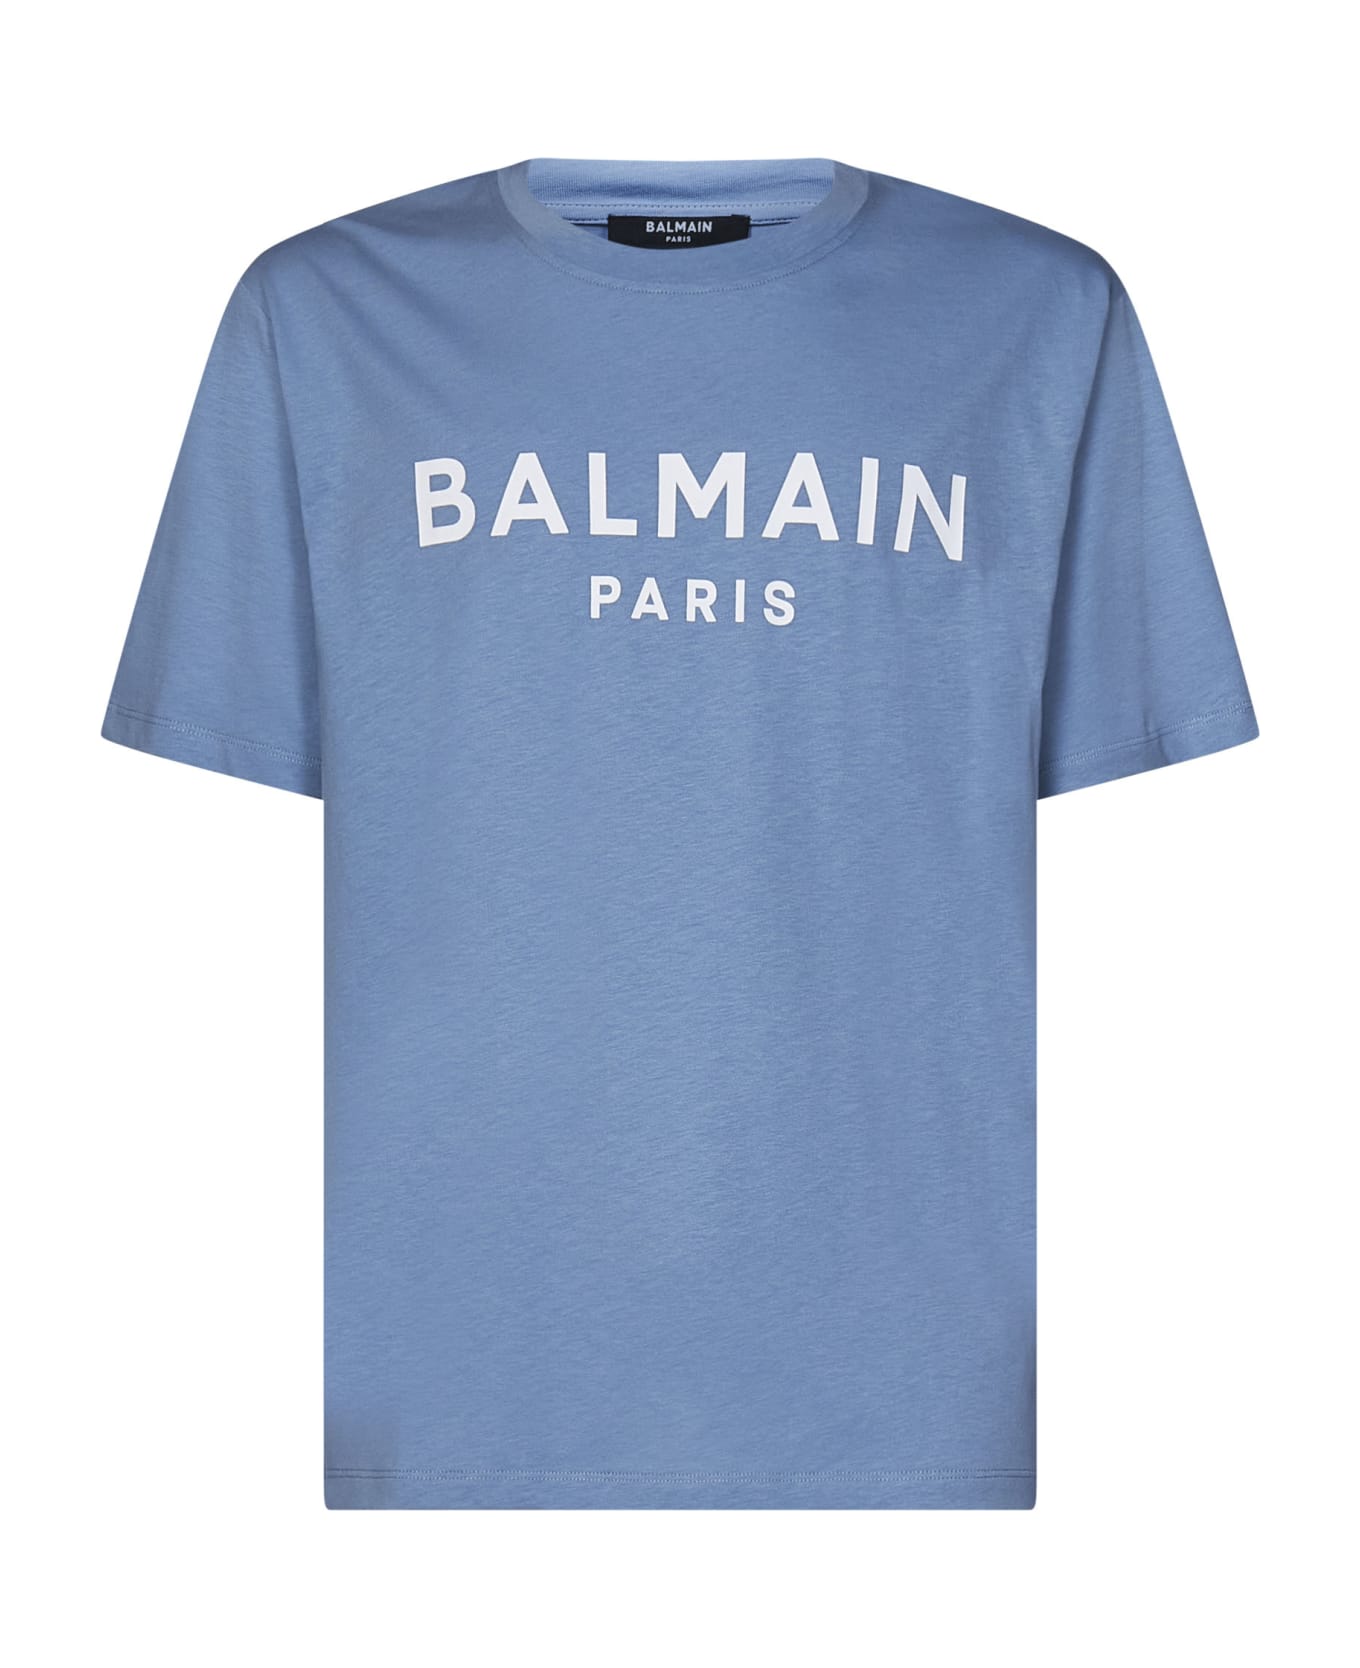 Balmain T-shirt - Bleu pale/blanc